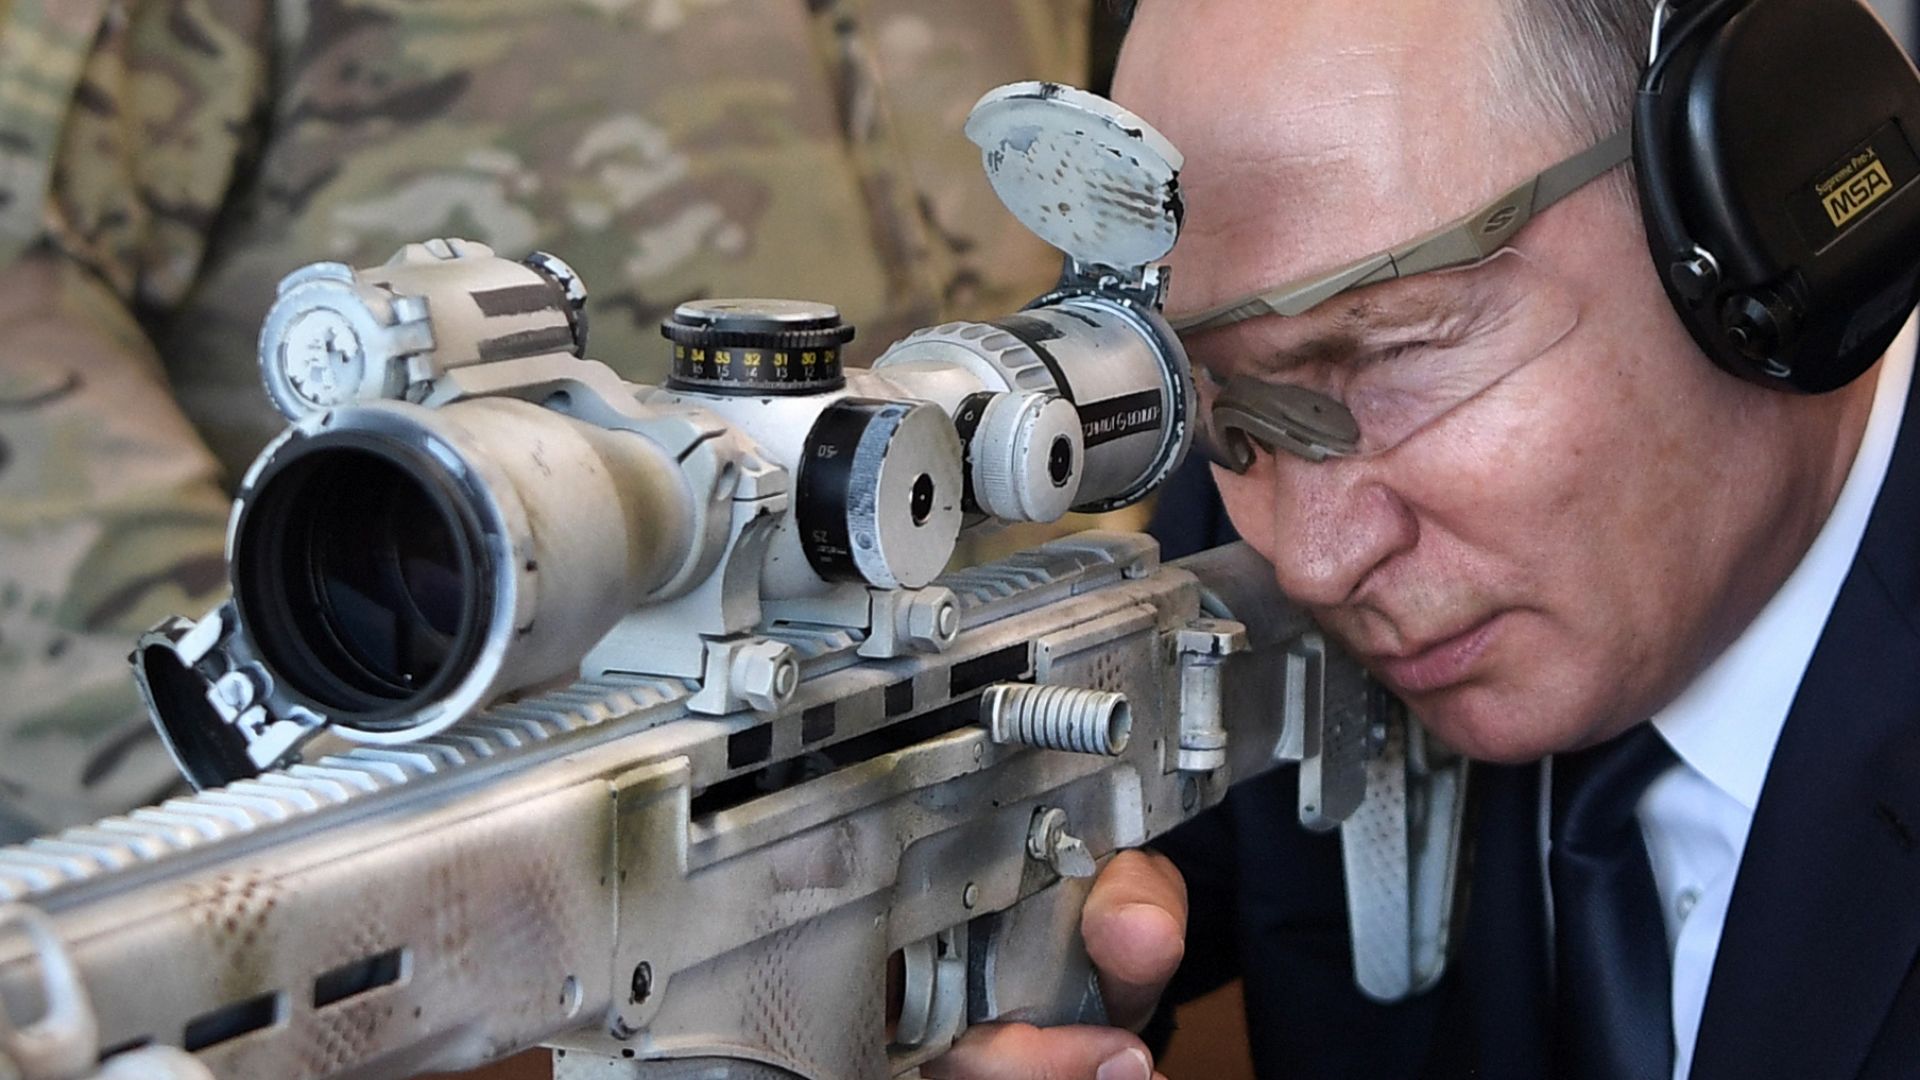 Владимир Путин разгледа днес галерията за снайперистка стрелба в стрелковия